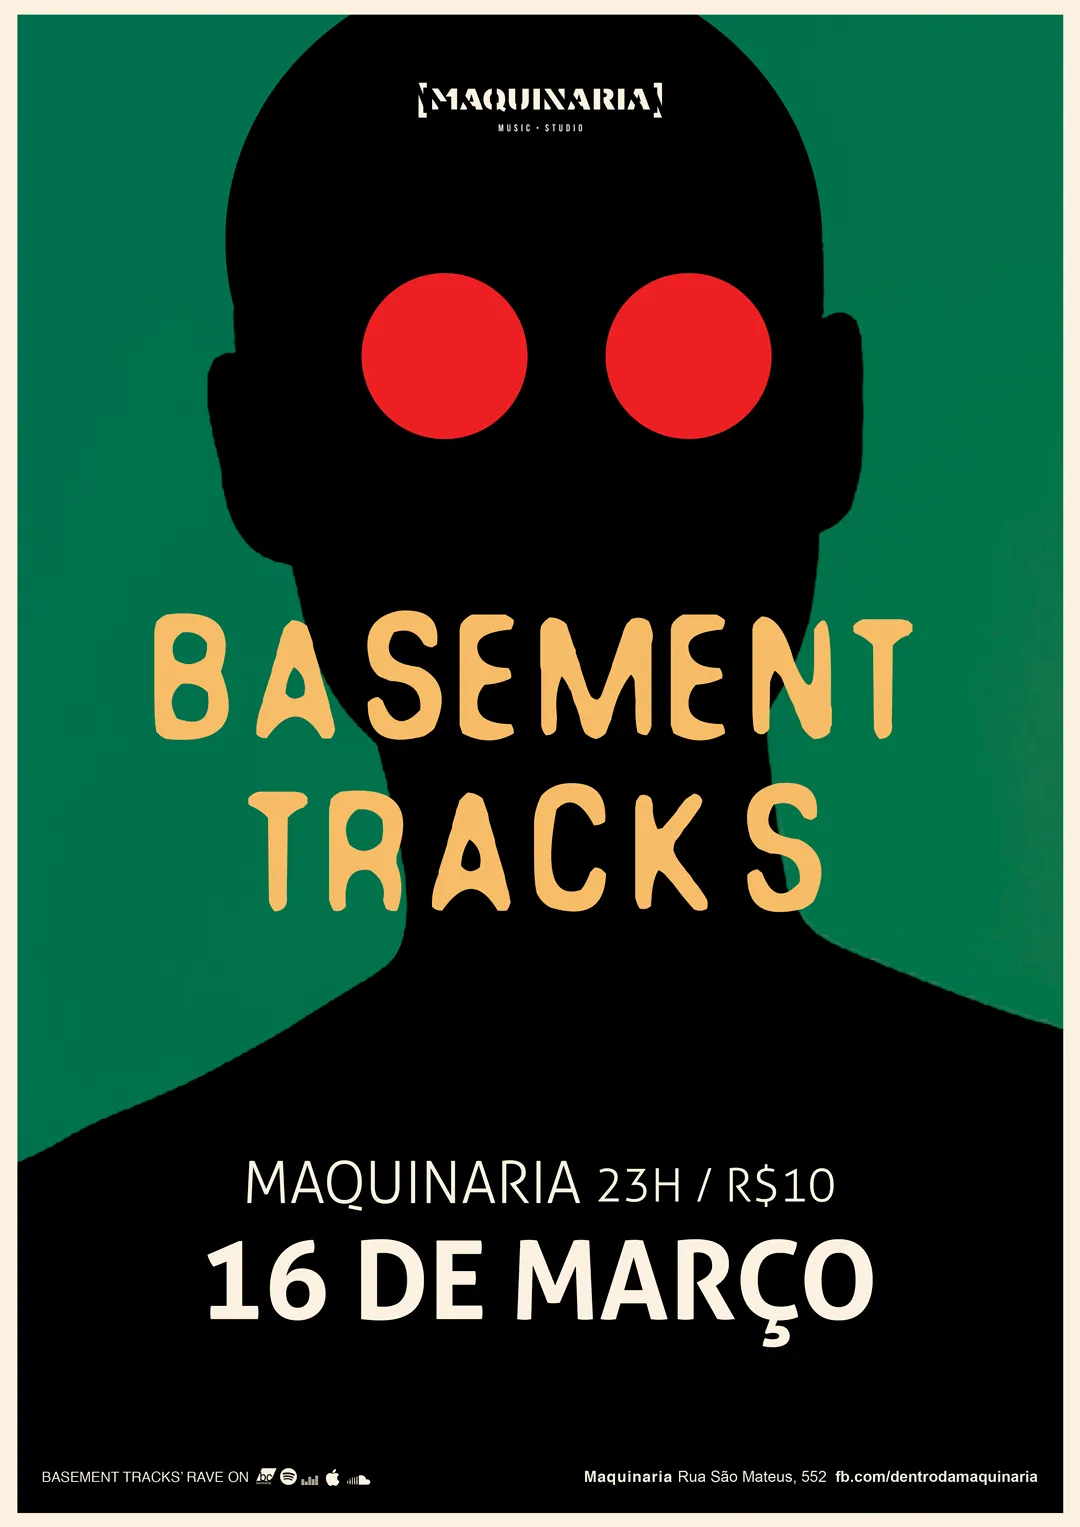 Silhueta negra com olhos grandes e vermelhos sobre fundo verde. Basement Tracks; Maquinaria, 16 de março.